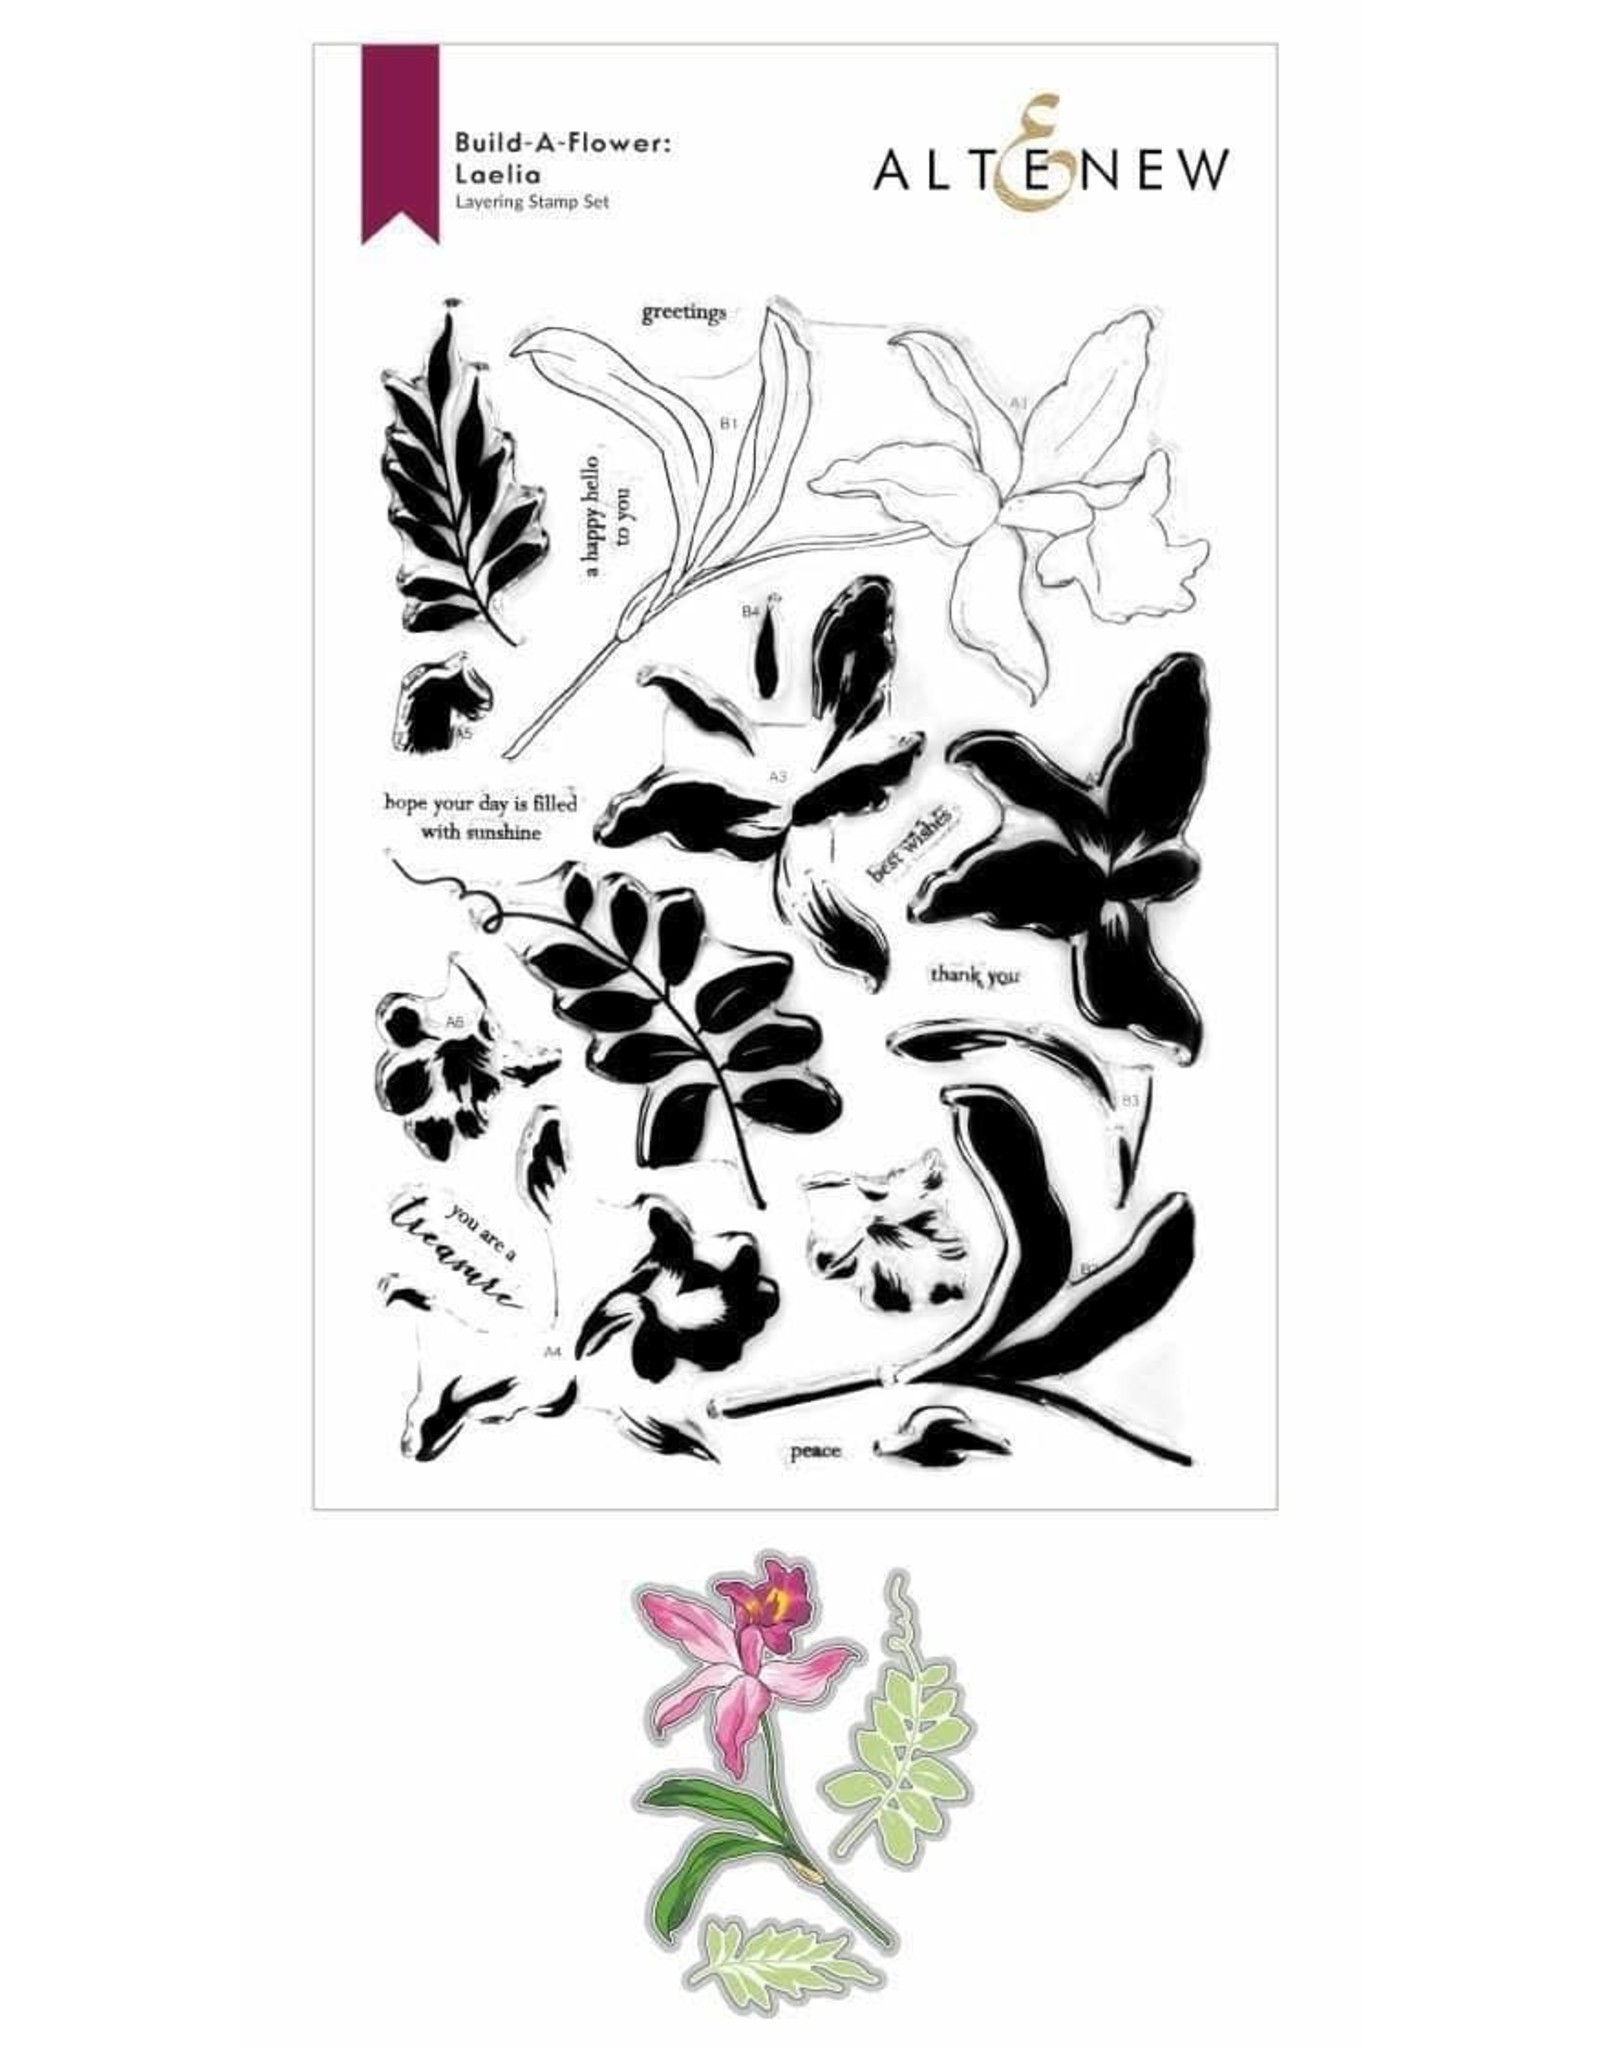 ALTENEW Build-A-Flower: Laelia Layering Stamp & Die Set